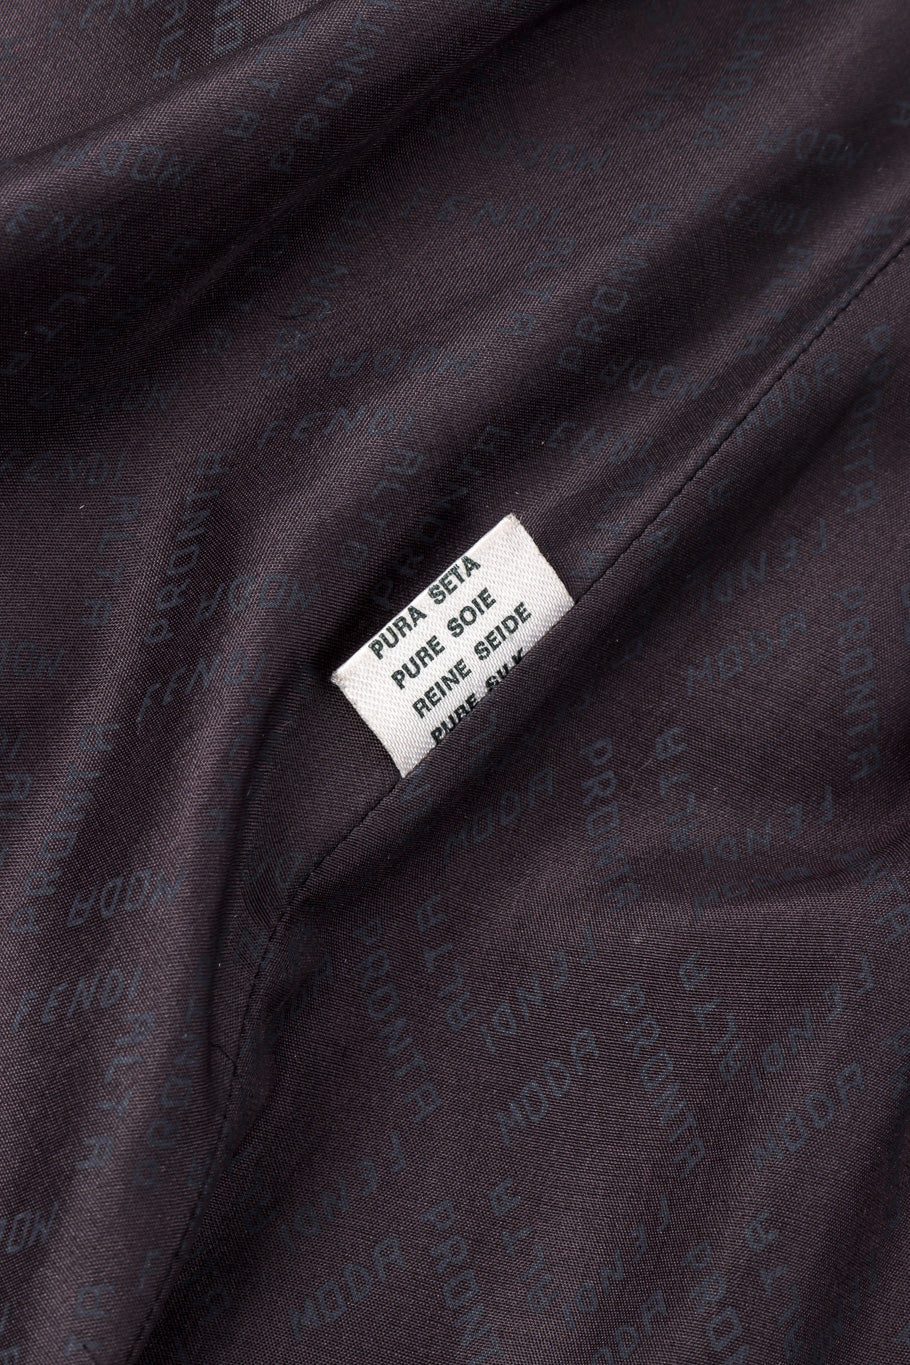 Vintage Fendi Lamb Fur Coat fabric content closeup @recessla